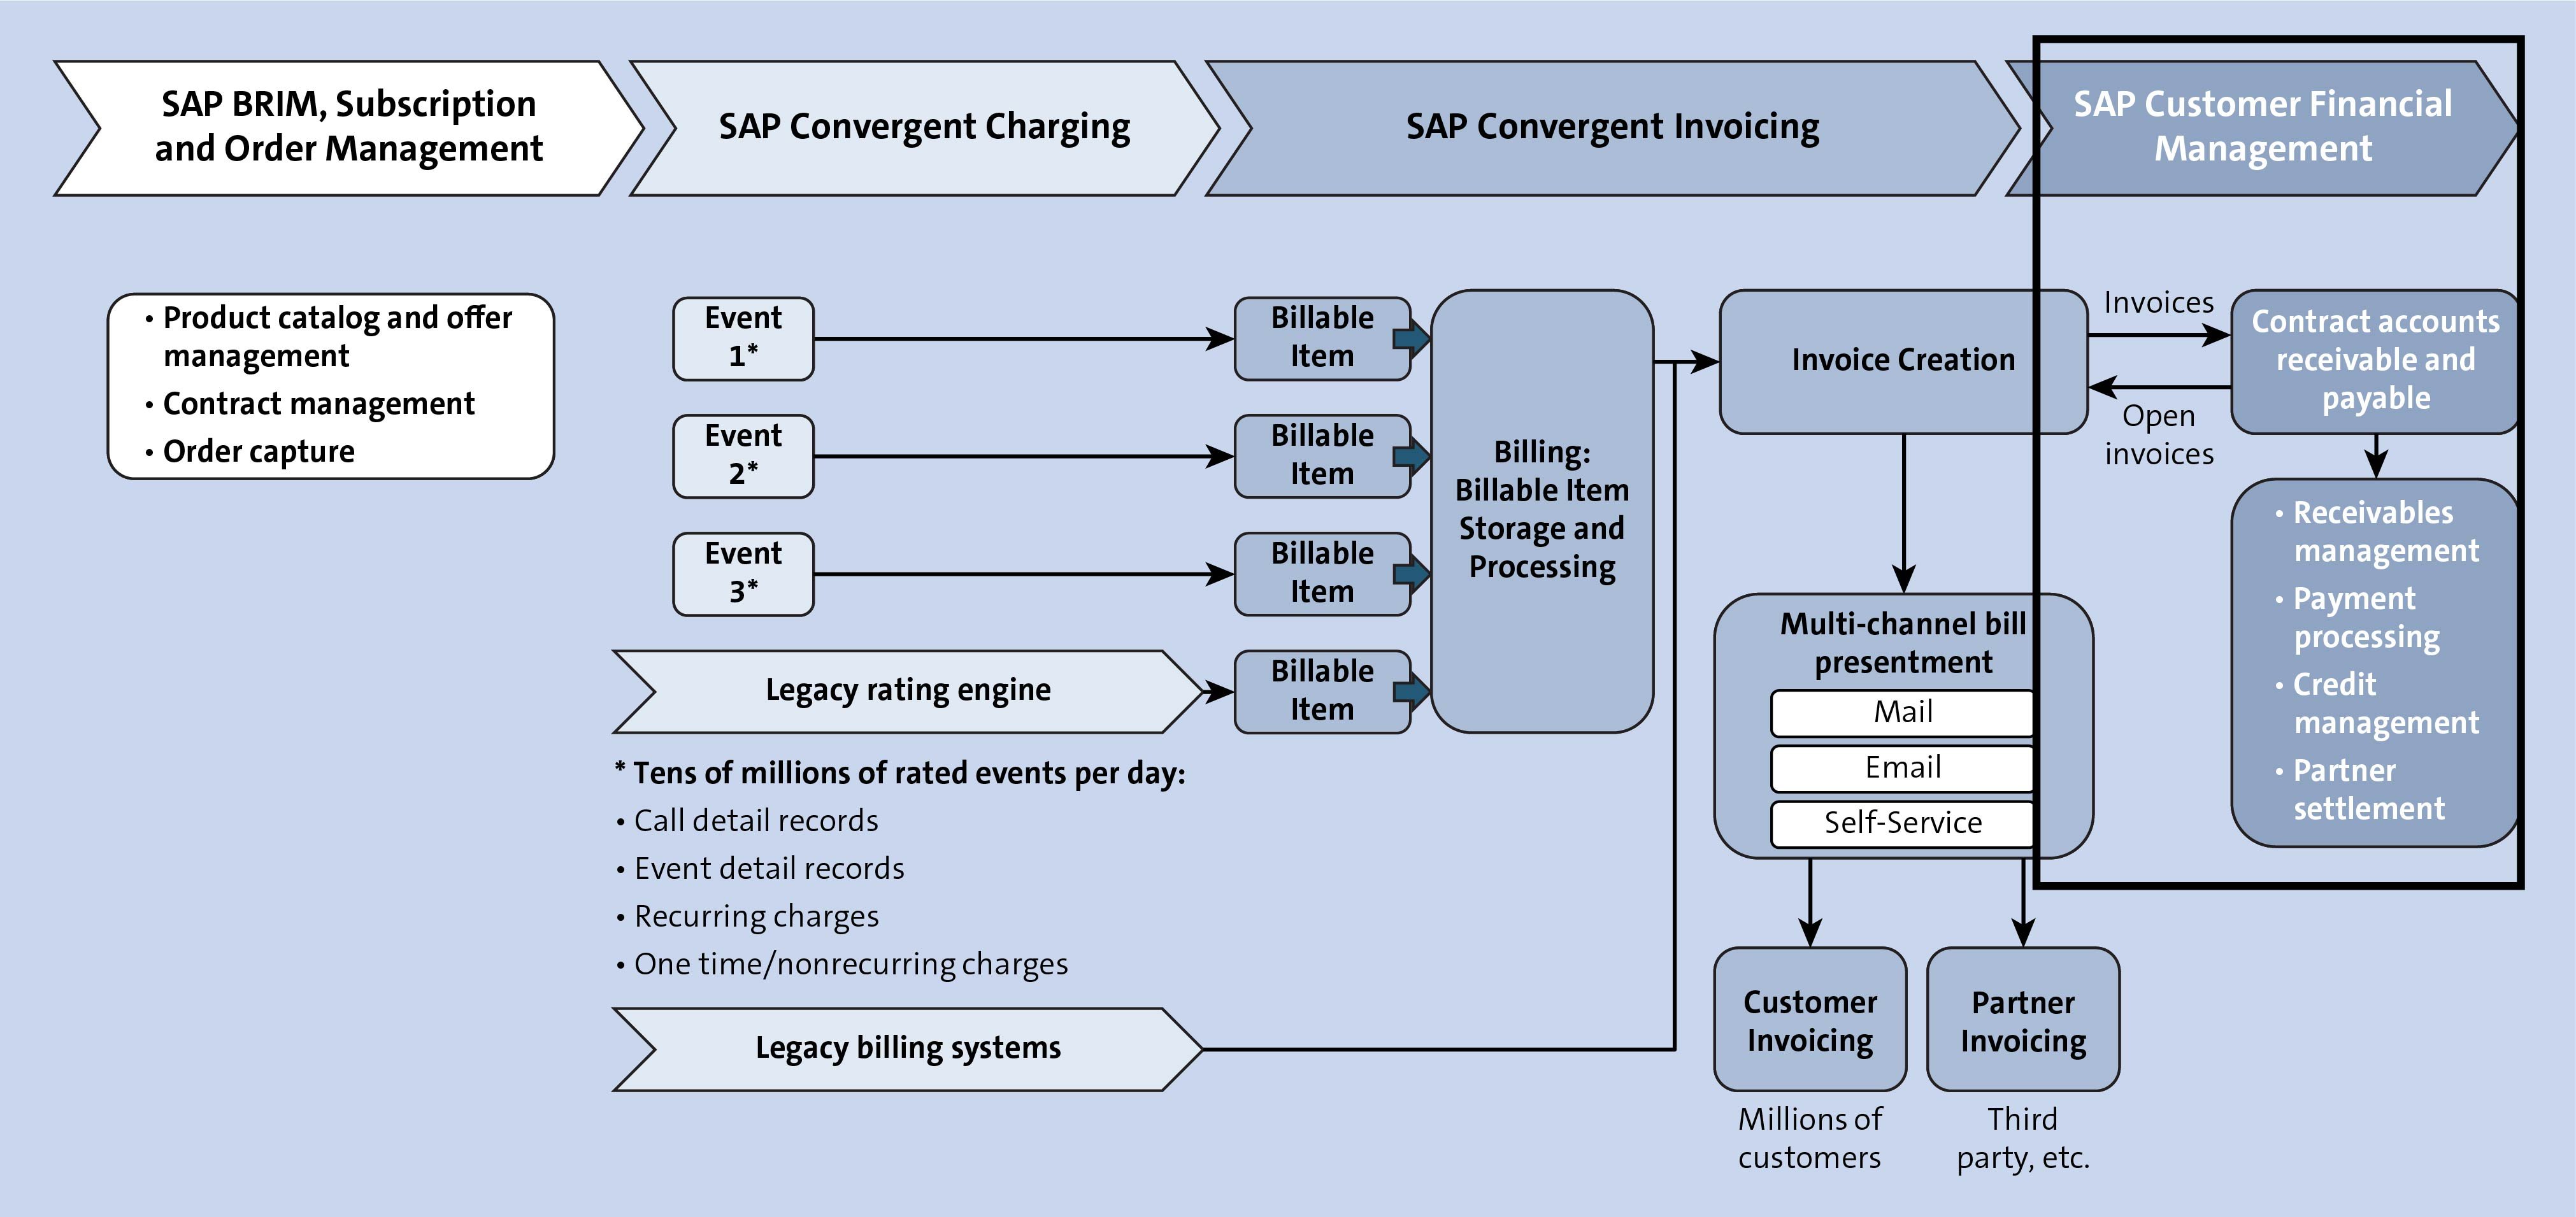 SAP Customer Financial Management